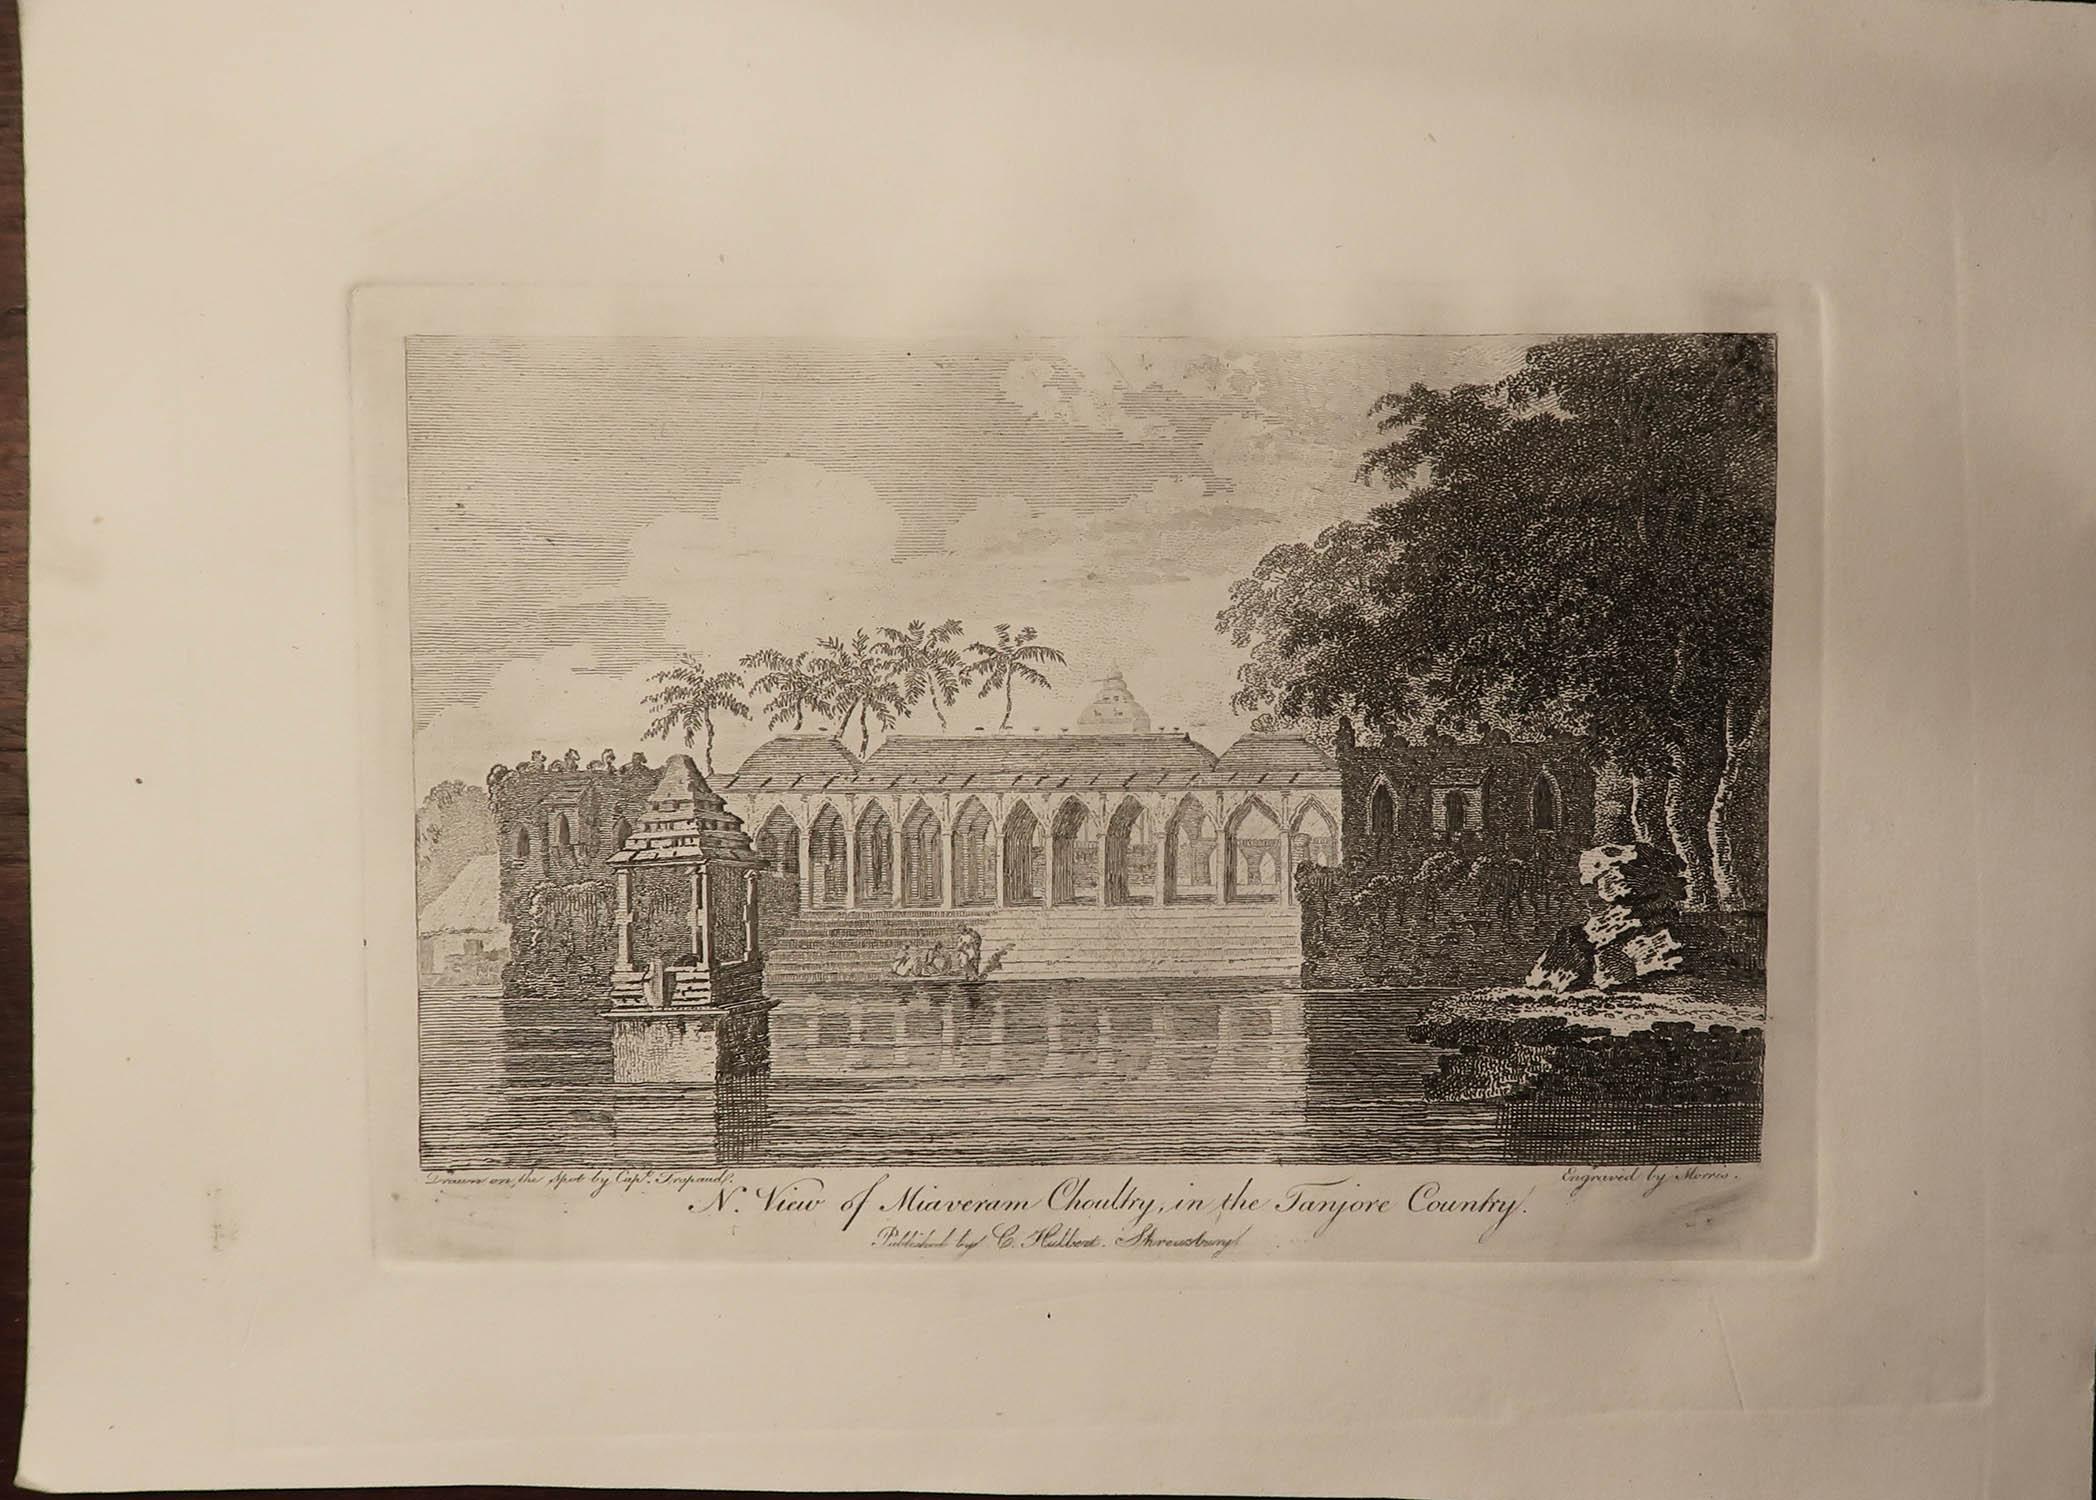 English Set of 10 Original Antique Prints of India After William Hodges, C.1820